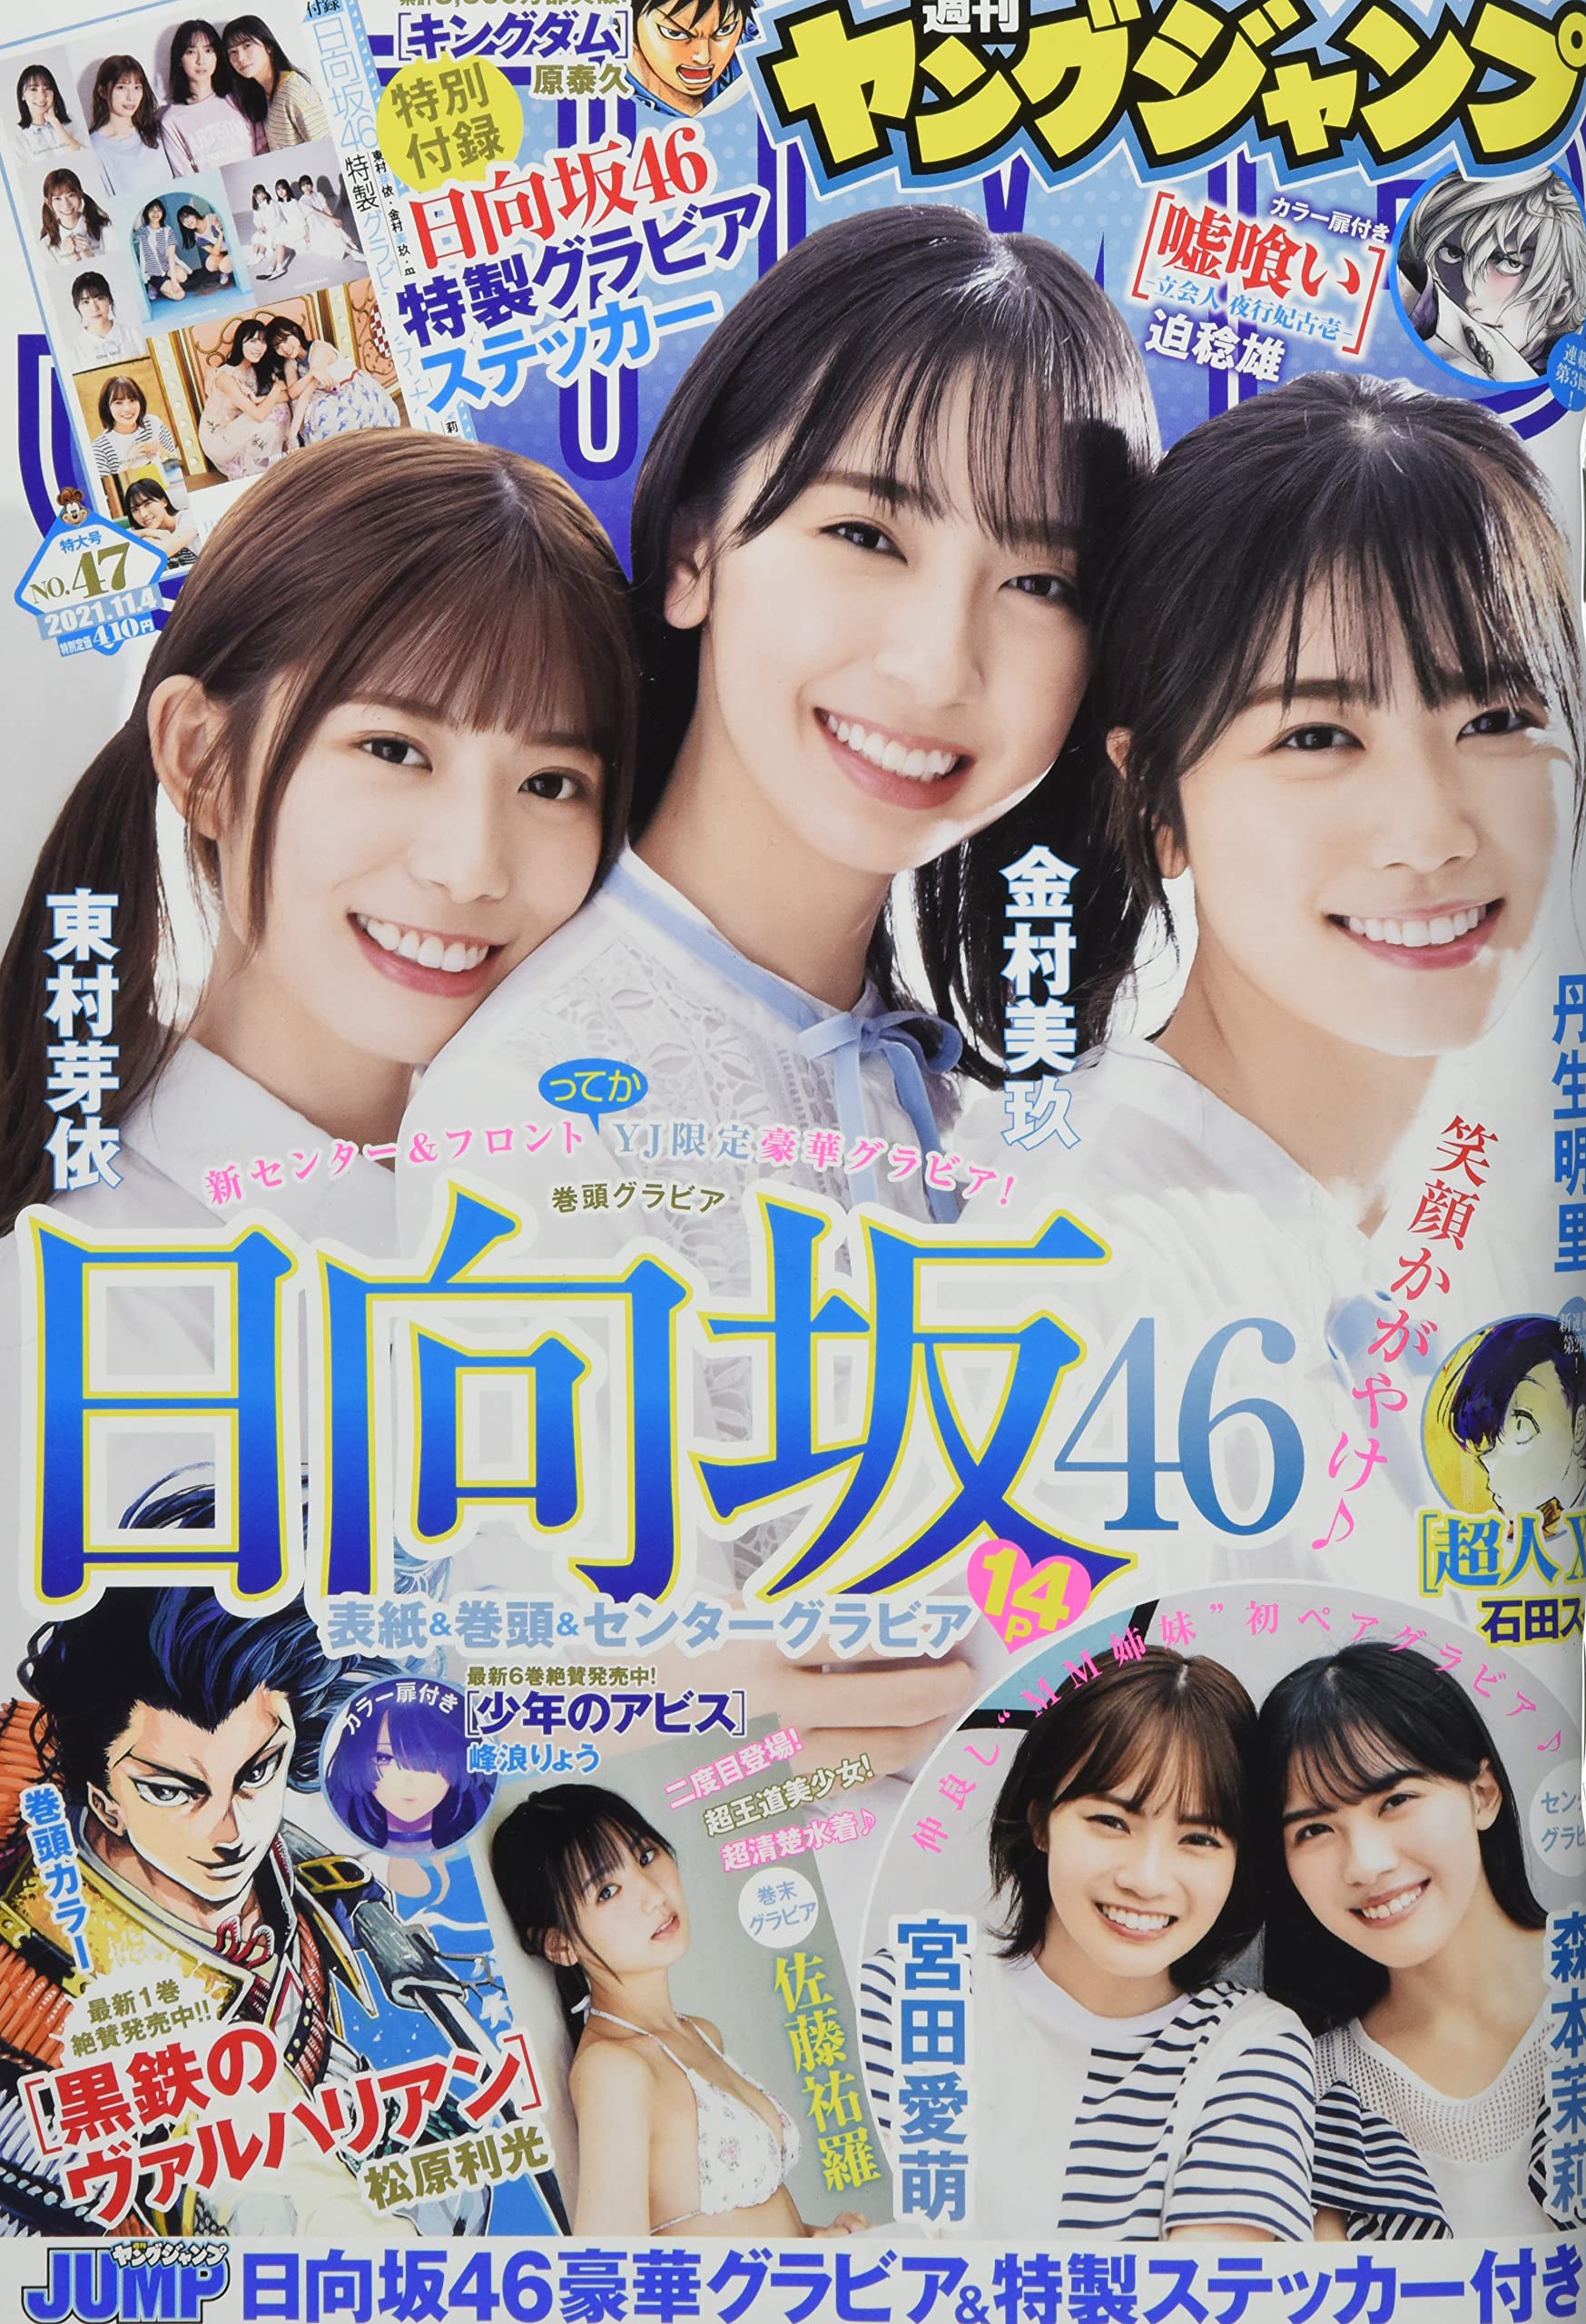  週刊ヤングジャンプ 2021年11月4日号 (No.47) 雑誌